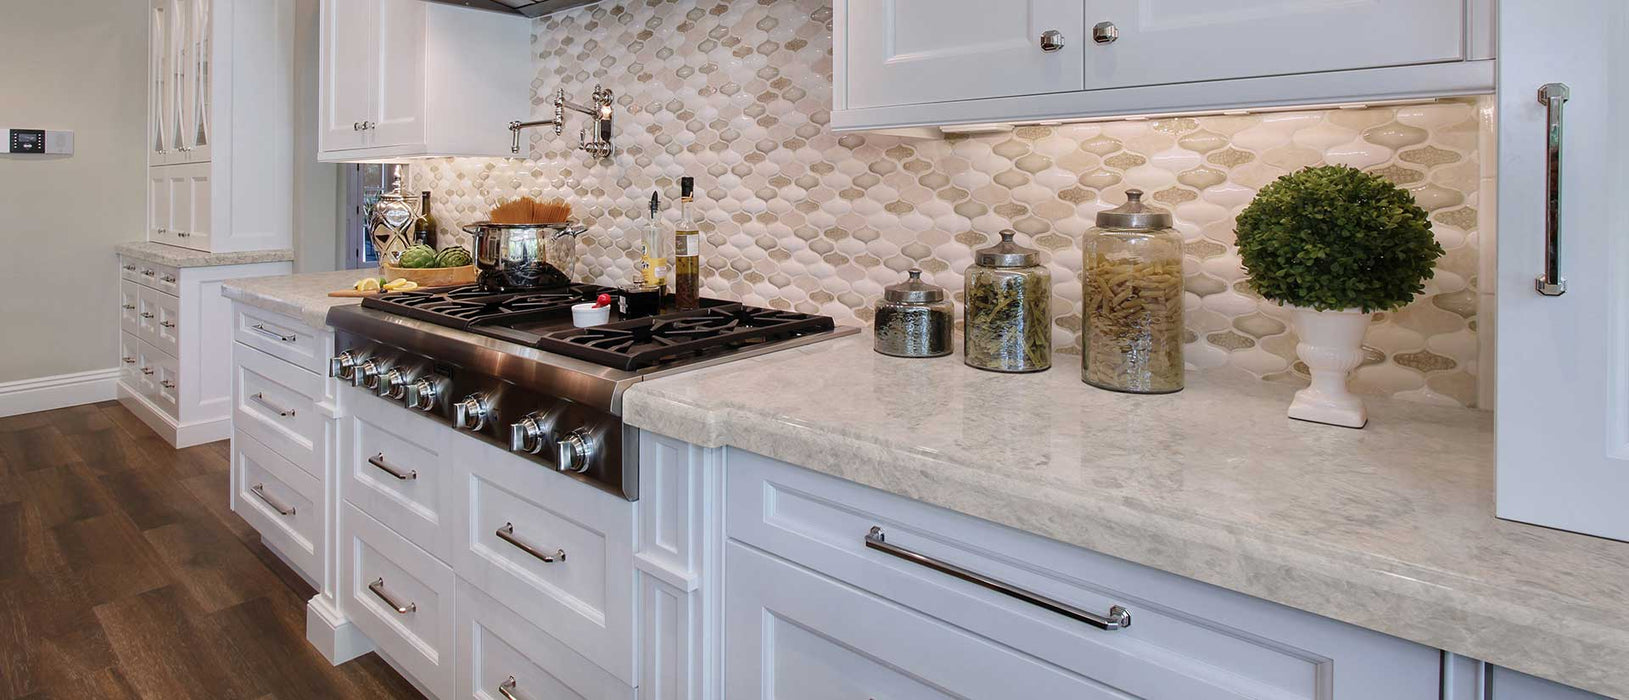 Portico cream quartz countertop kitchen scene